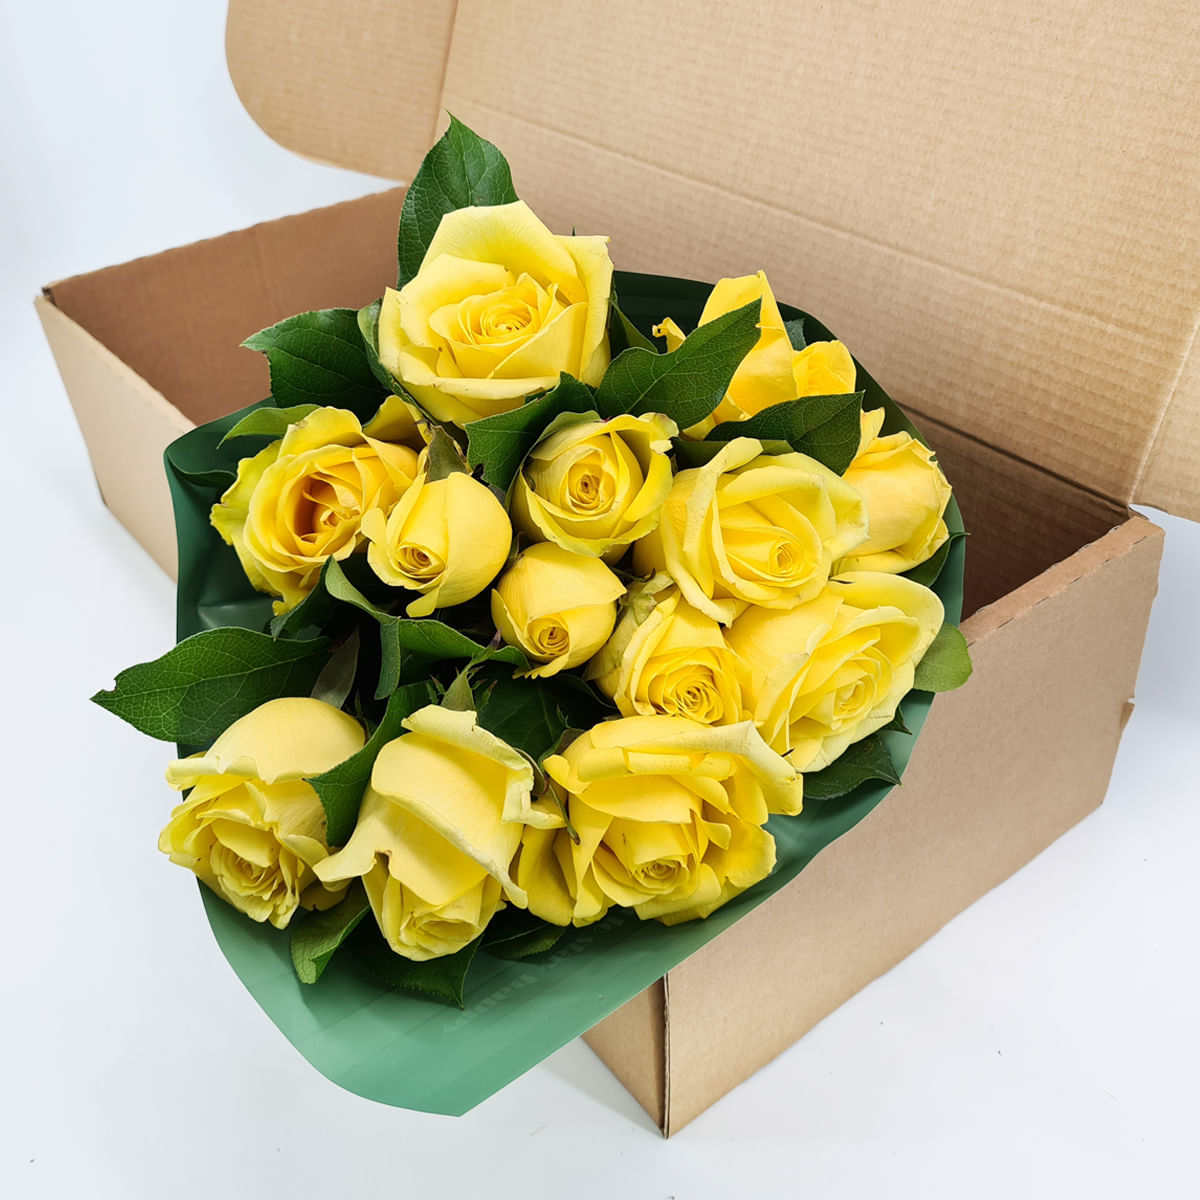 Buchet de 15 trandafiri multicolori in cutie Buchet